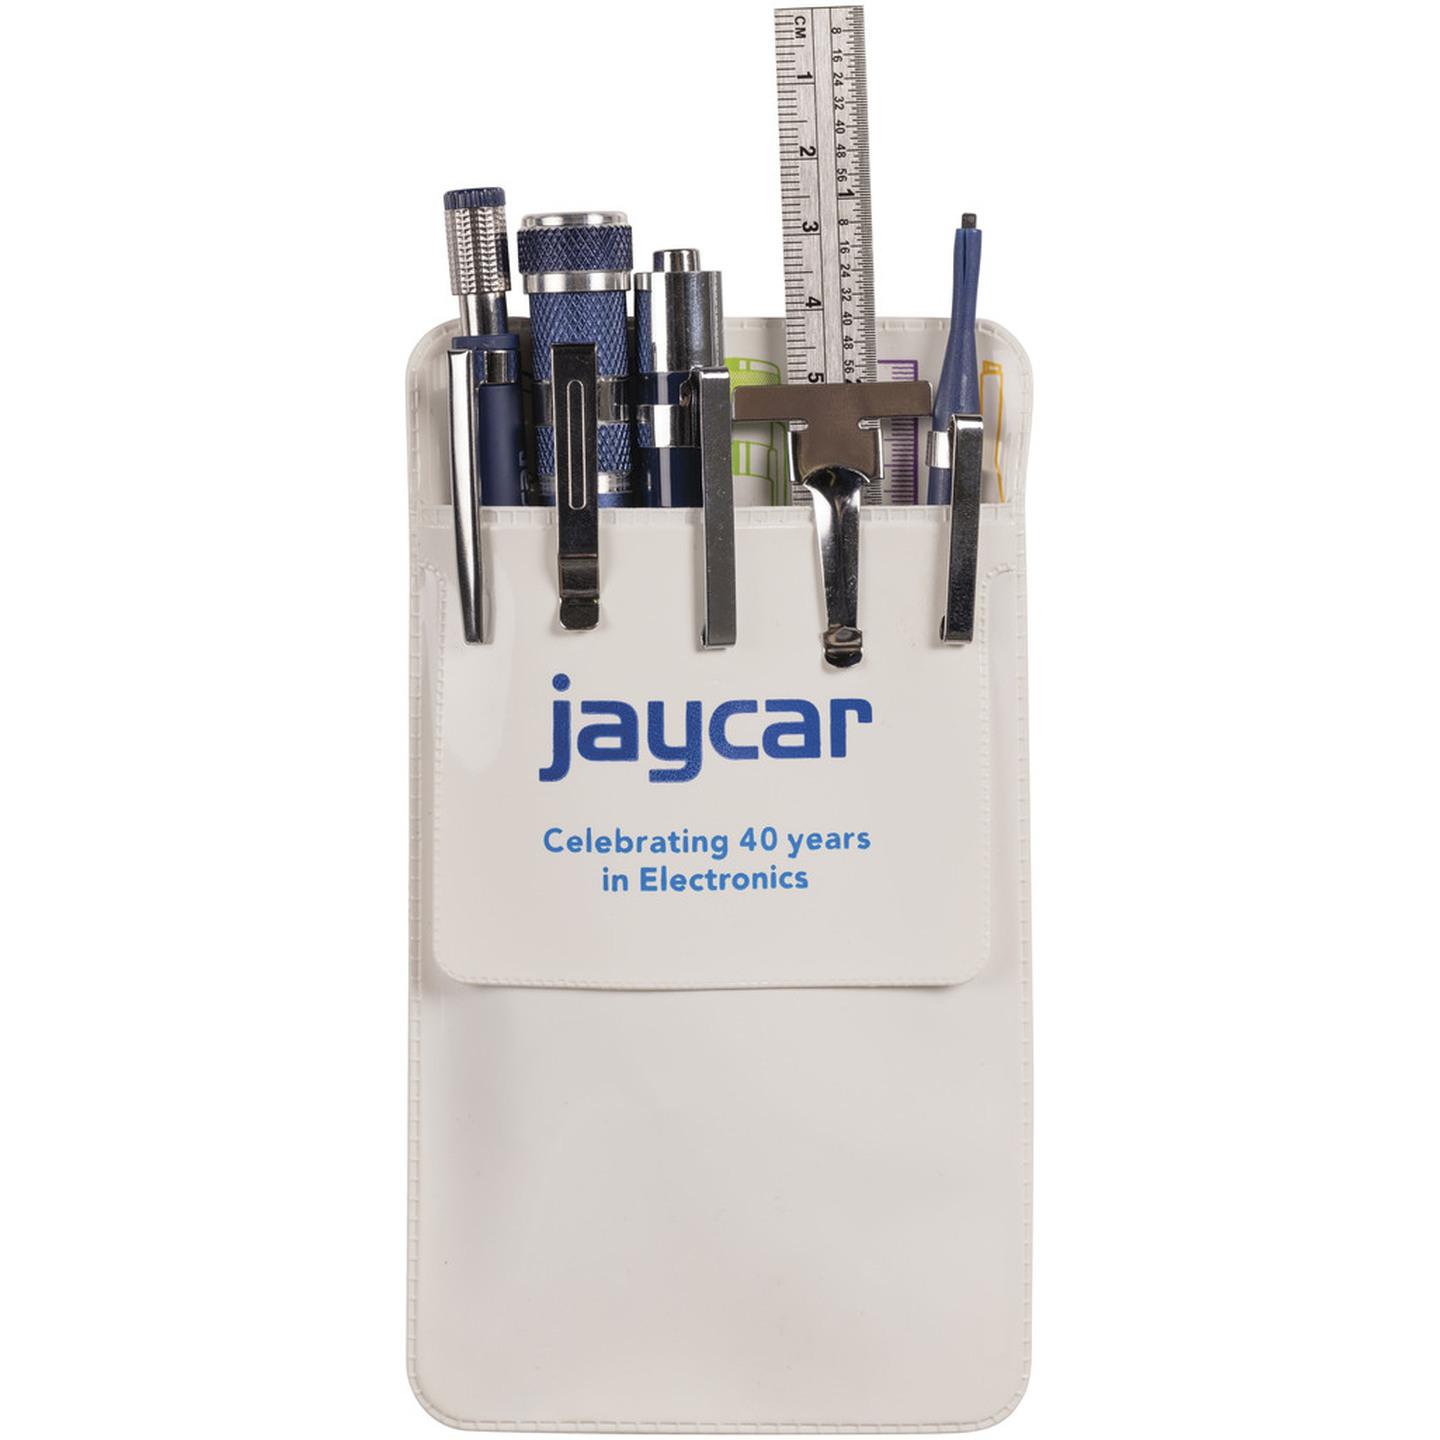 Jaycar Vinyl Pocket Protector